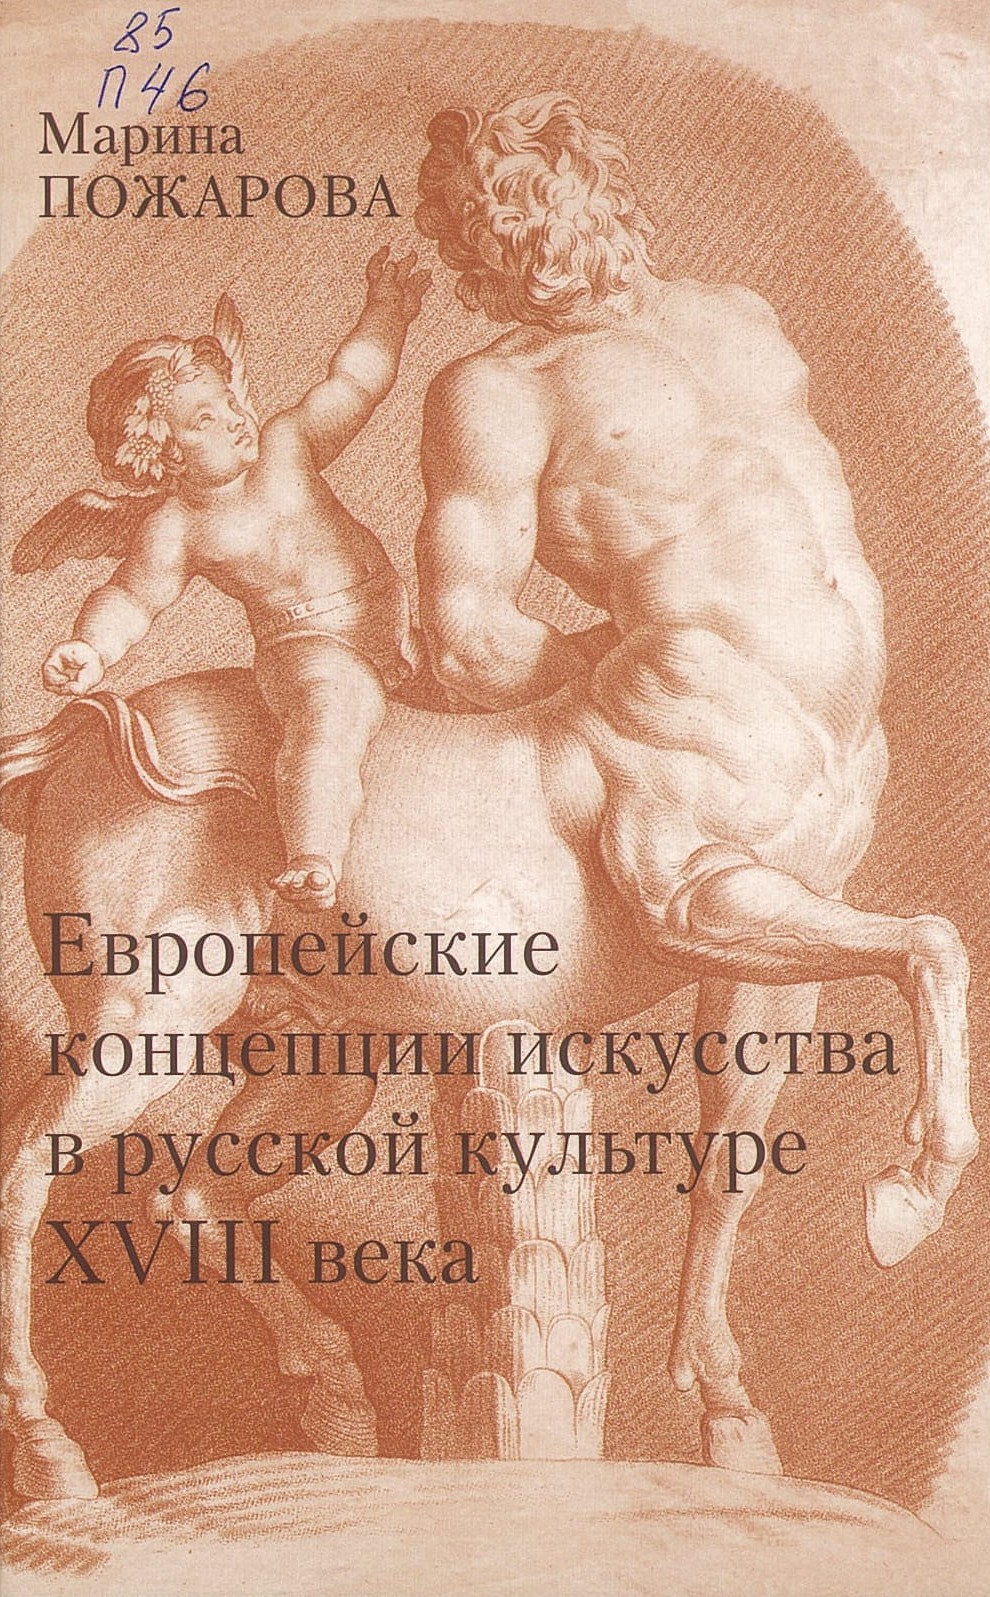 Пожарова, М. А. Европейские концепции искусства в русской культуре XVIII века